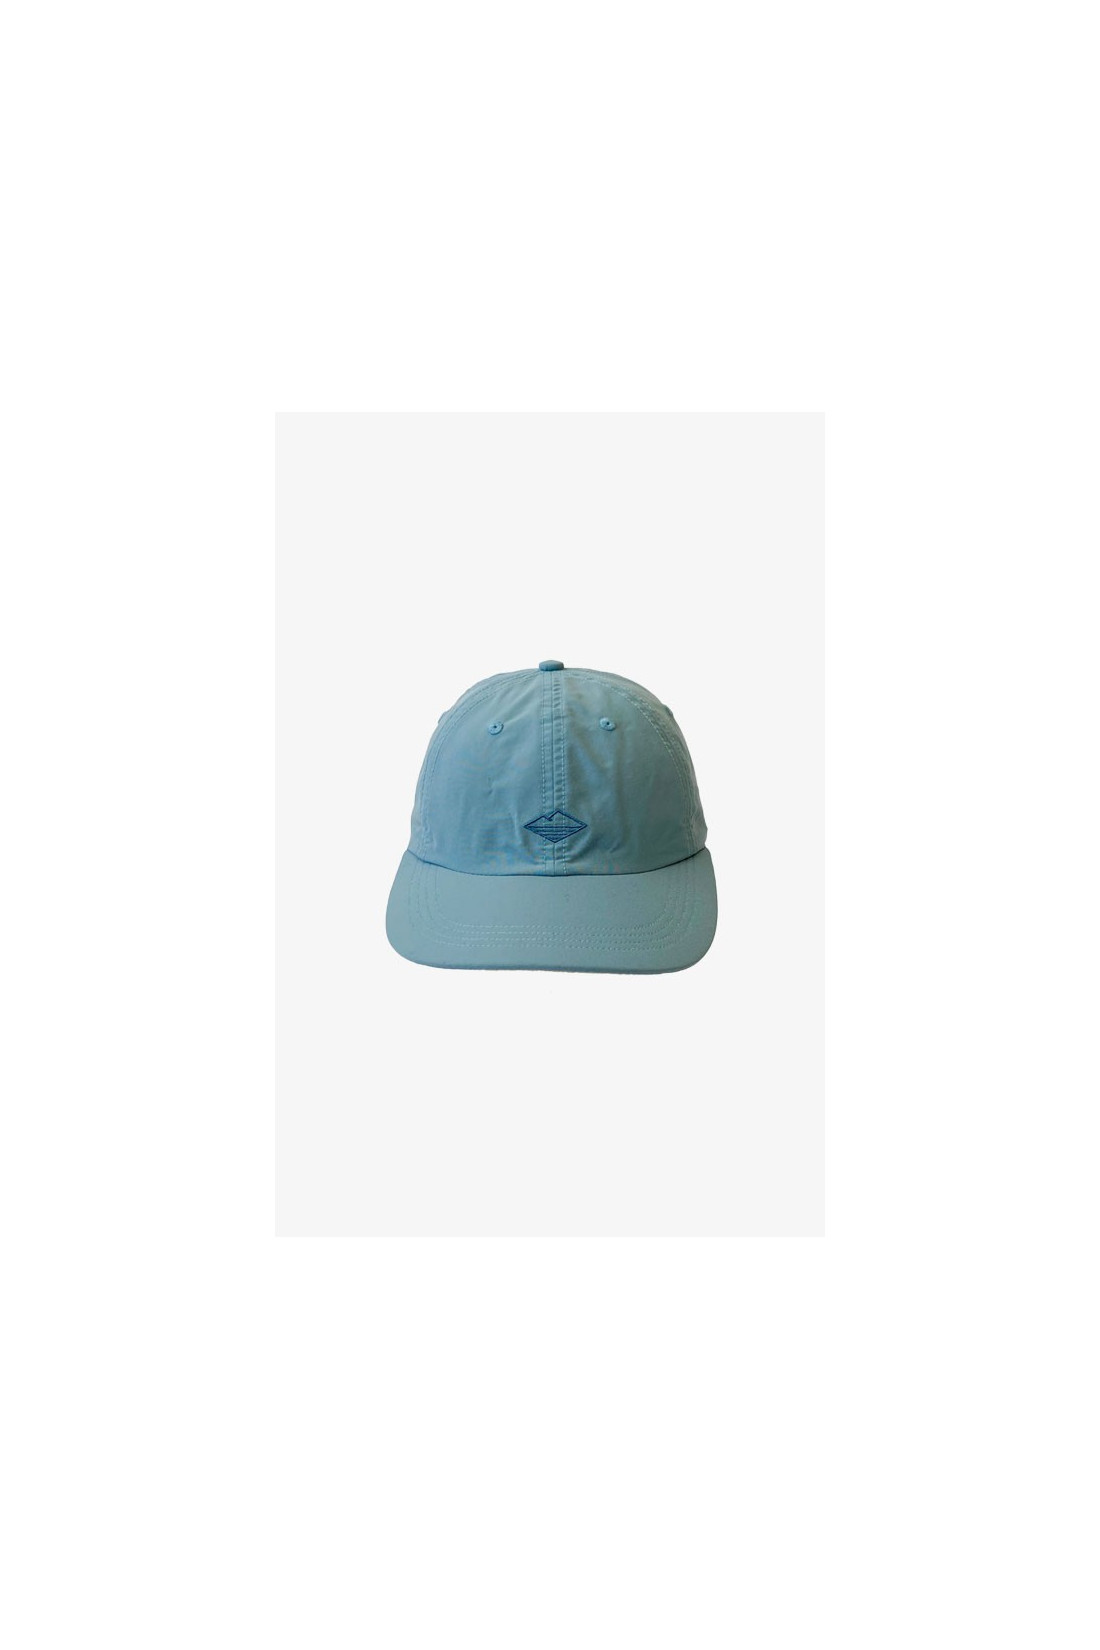 BATTENWEAR / Nylon field cap Powder blue